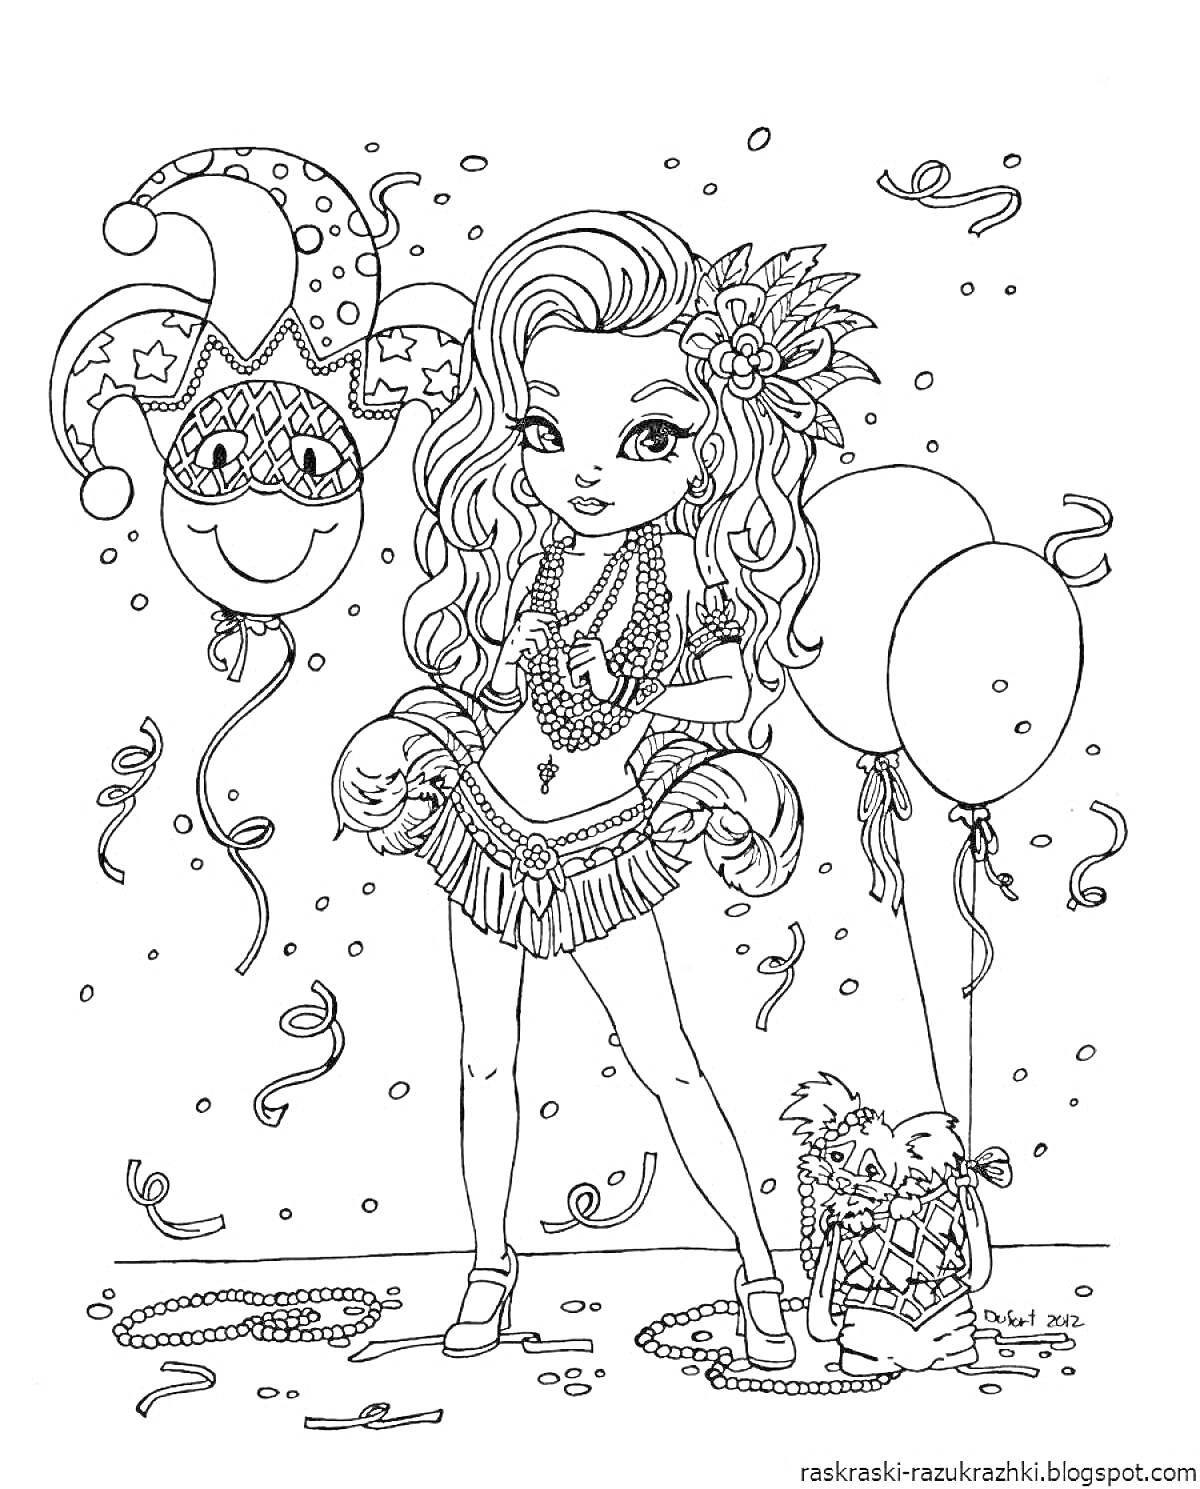 Девочка на карнавале с веселой маской и шарами, одетая в карнавальный костюм с украшениями и цветами в волосах